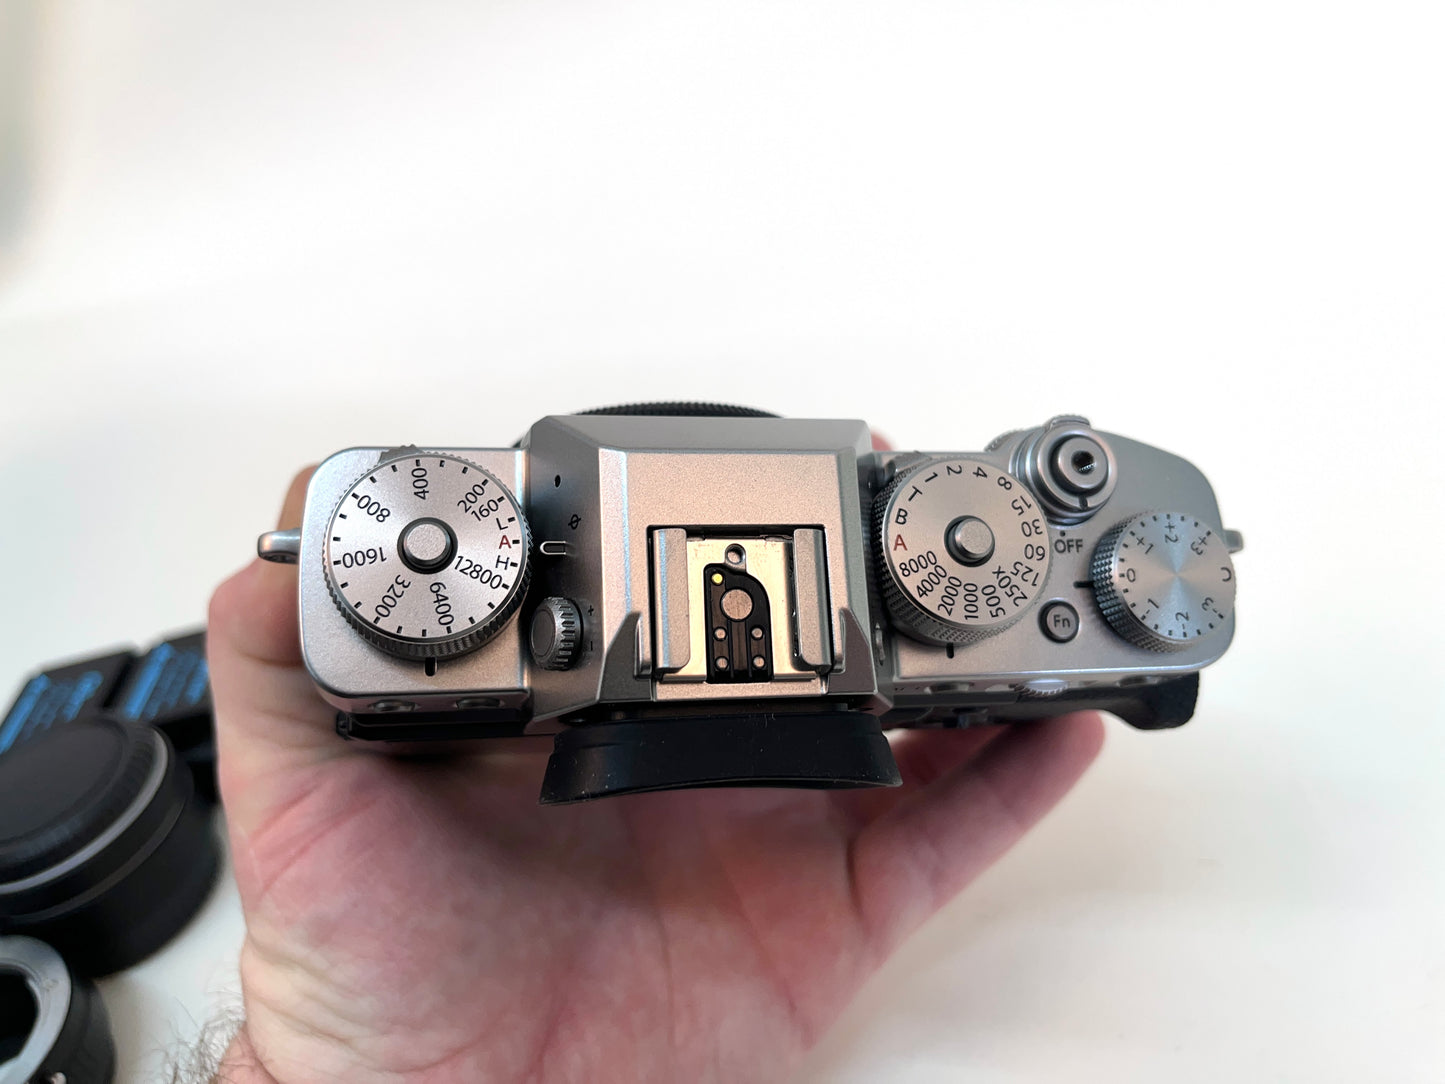 Fujifilm X-T3 Silver Camera Body Near Mint BOXED